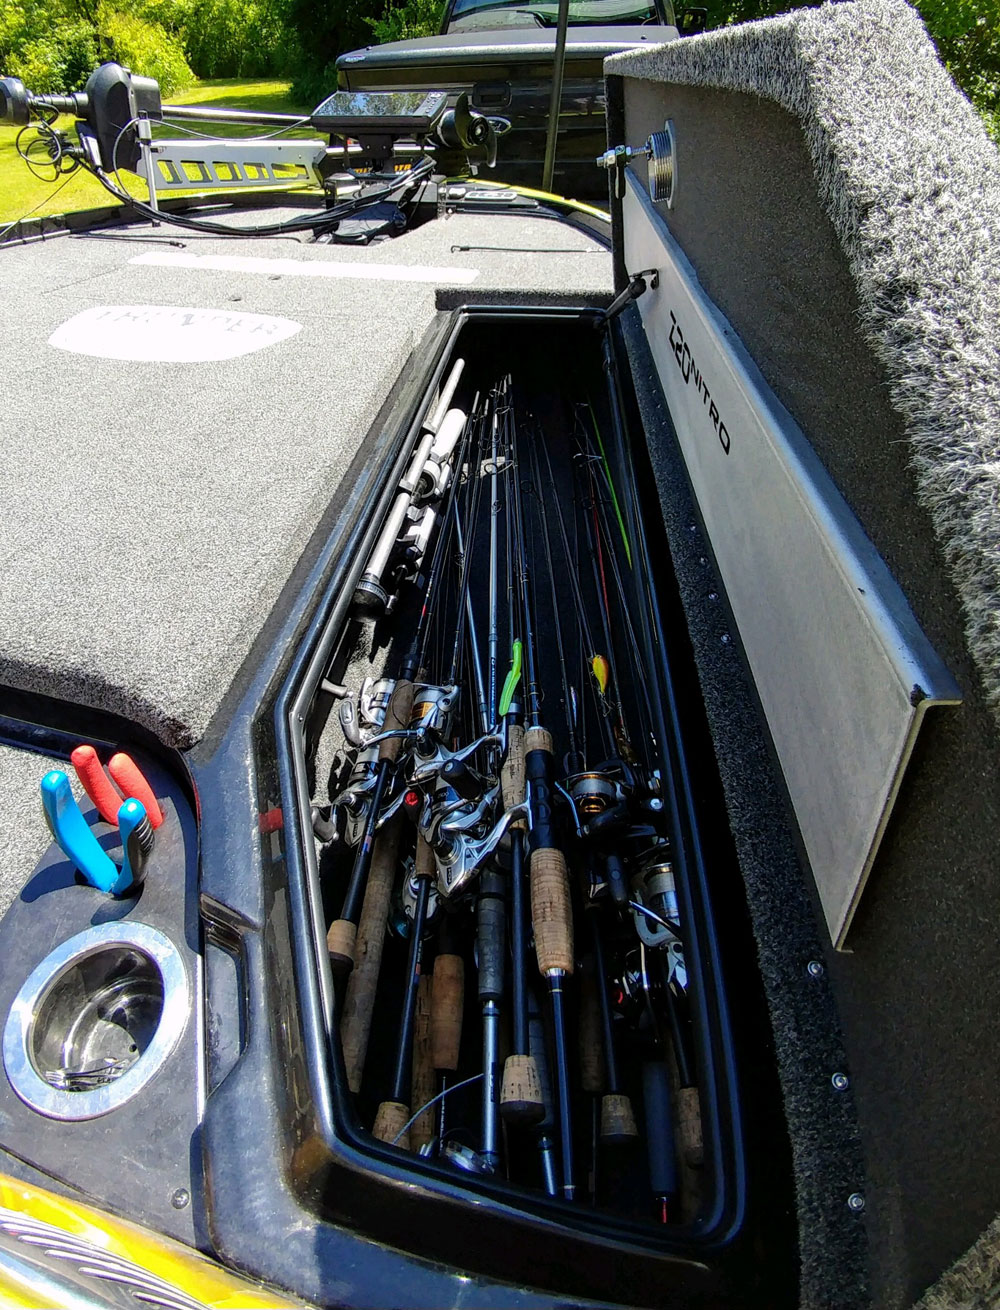 Organized Fishing Gear Storage